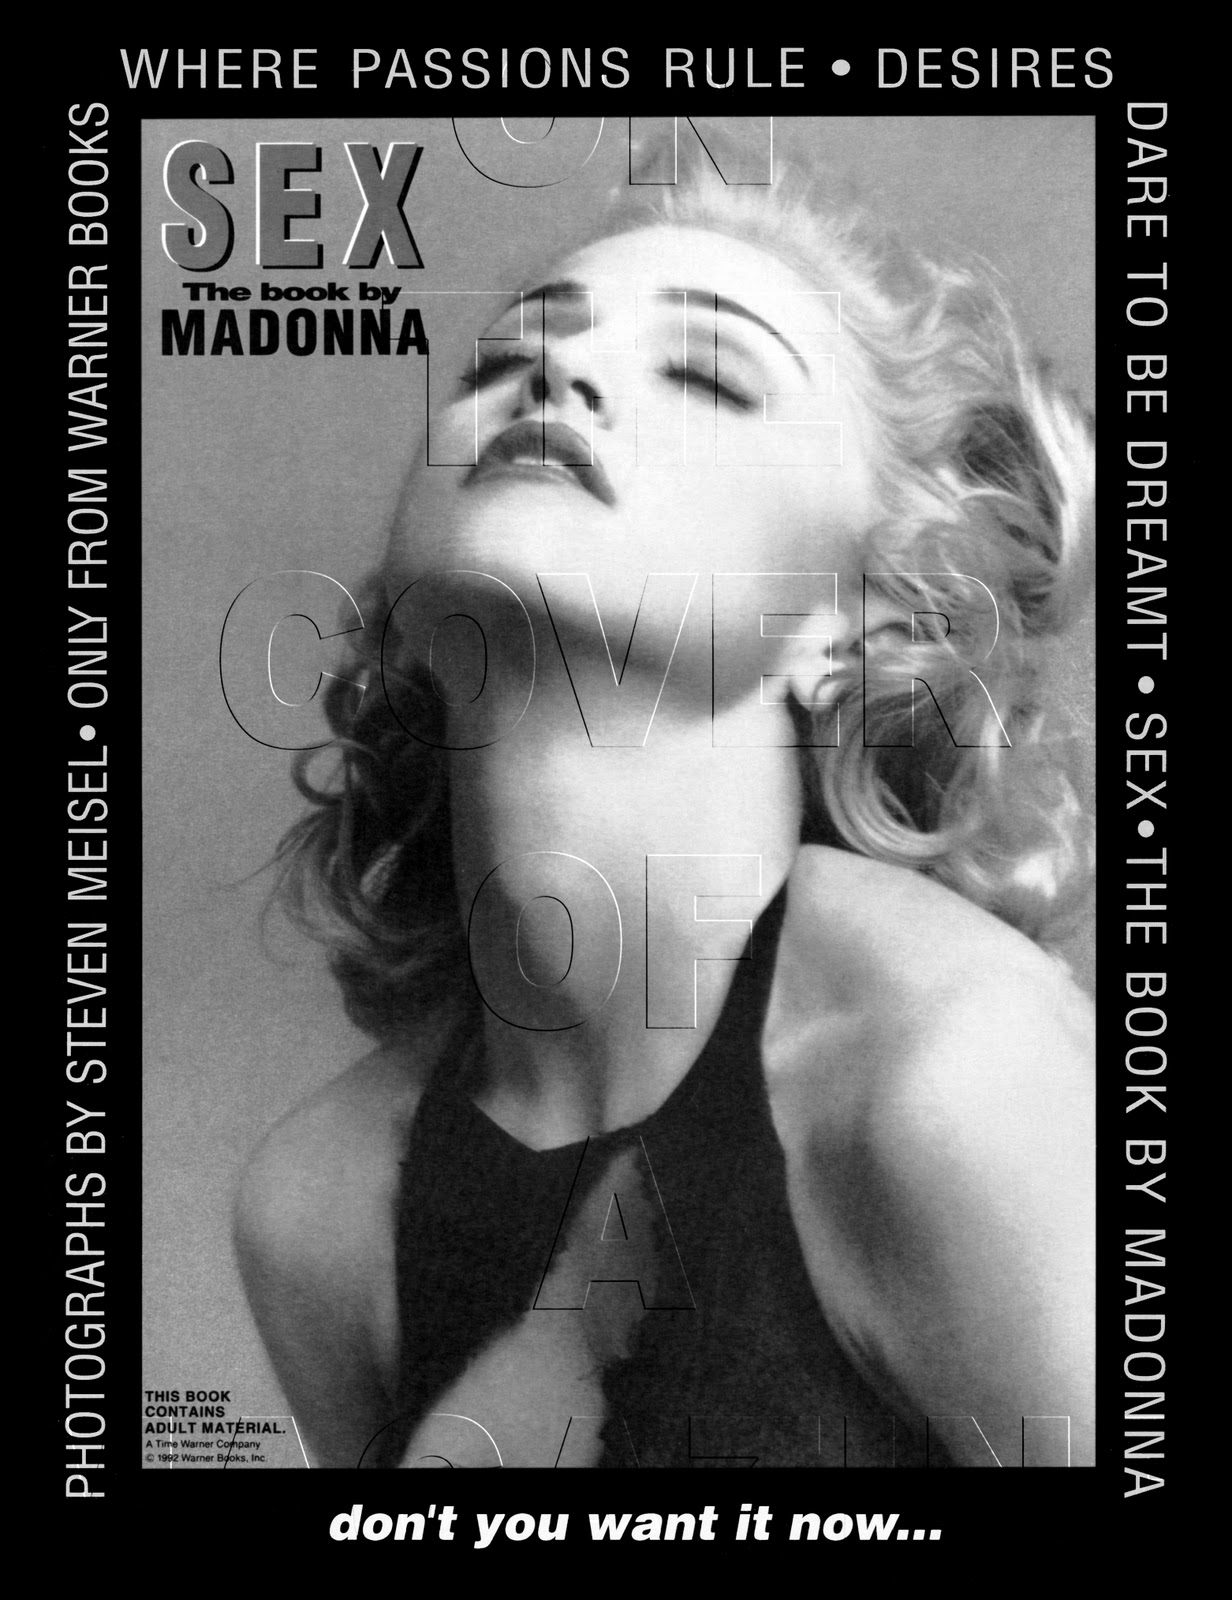 interview-usa-1992-sex-book-advert-copy.jpg